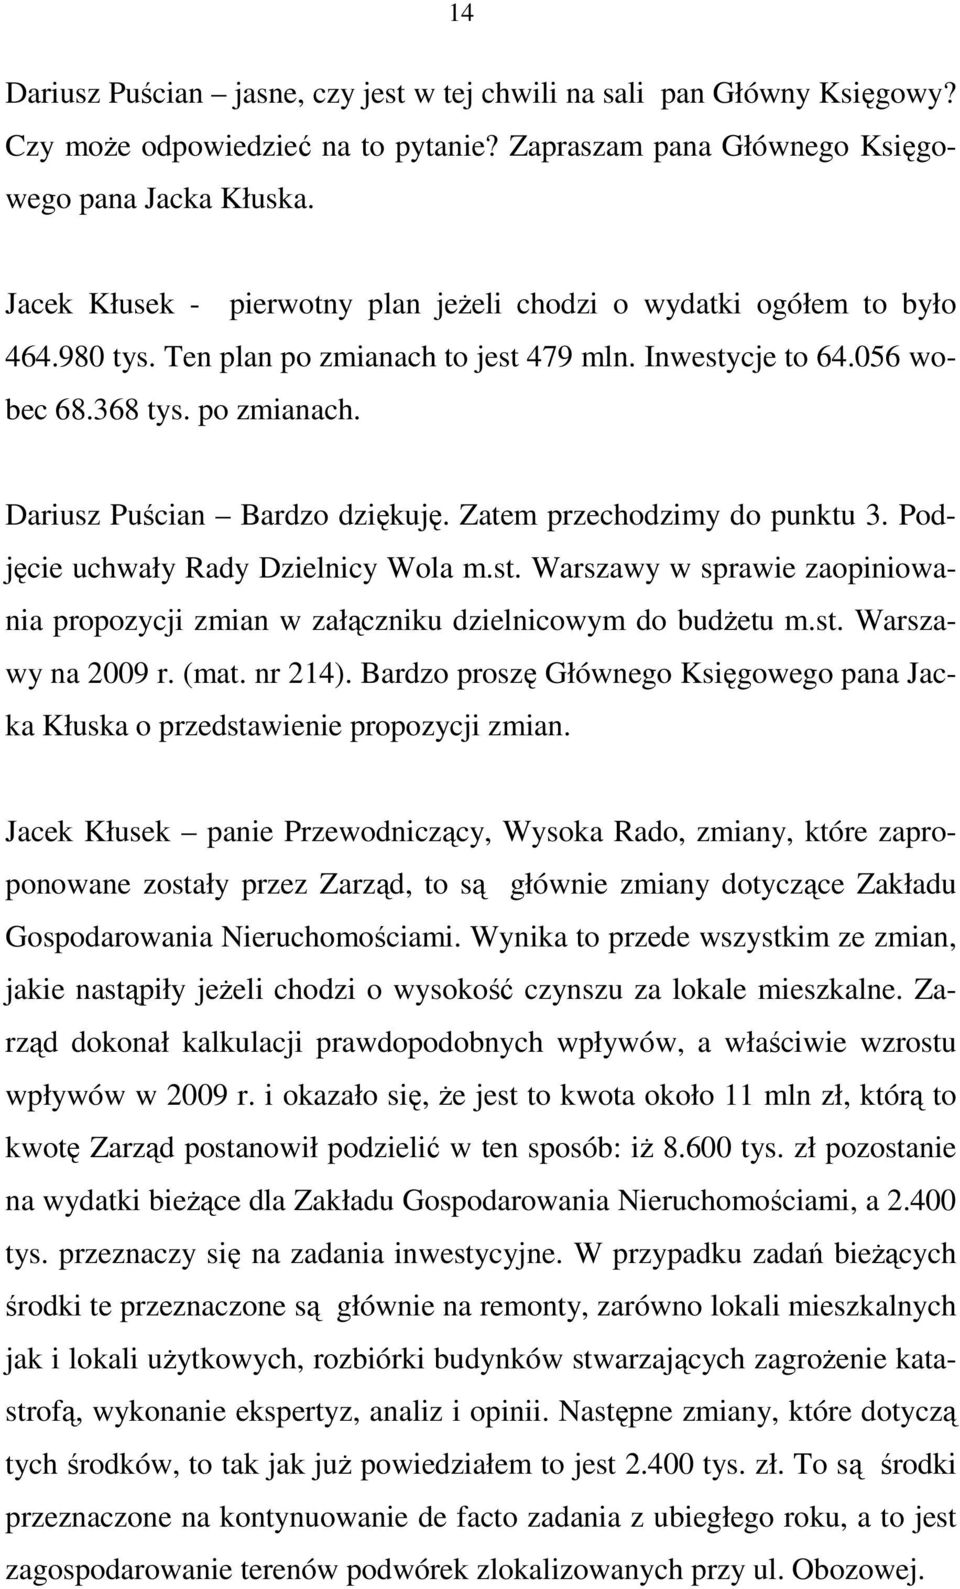 Zatem przechodzimy do punktu 3. Podjęcie uchwały Rady Dzielnicy Wola m.st. Warszawy w sprawie zaopiniowania propozycji zmian w załączniku dzielnicowym do budŝetu m.st. Warszawy na 2009 r. (mat.